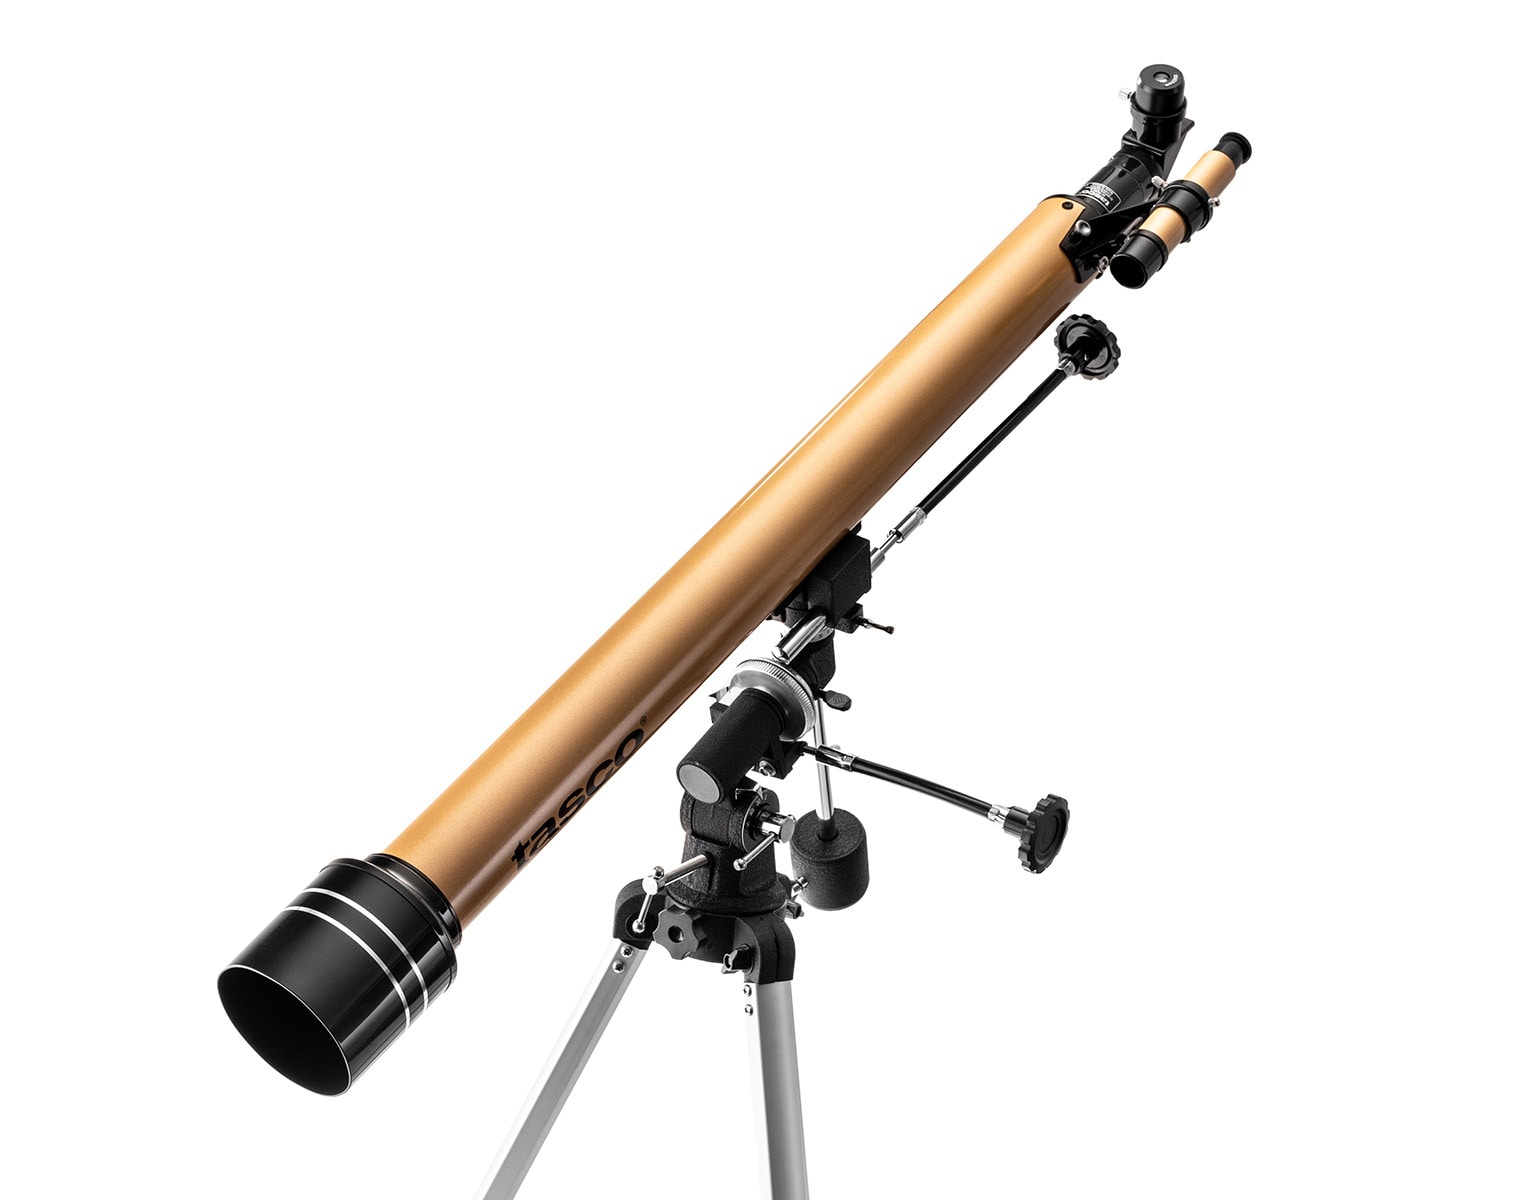 Teleskop Tasco Luminova 60x900 mm 675x